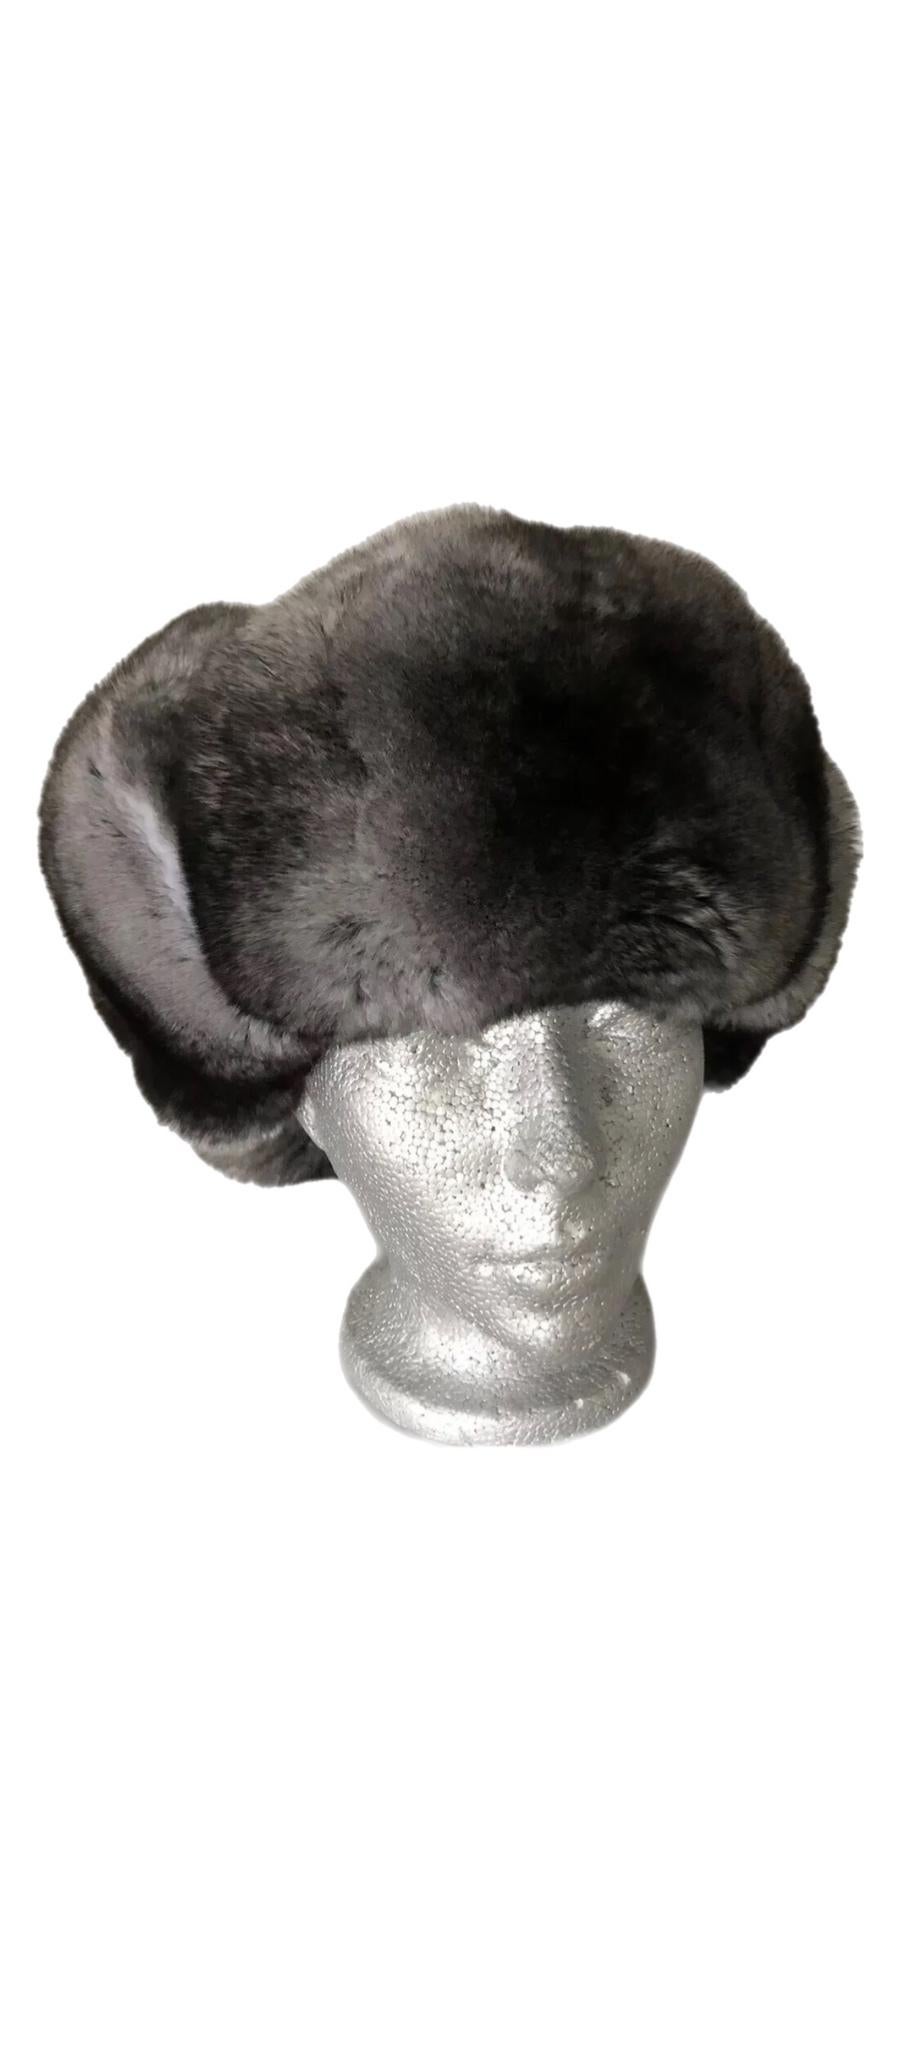 Brandneue Chinchilla Pelzmütze (Größe - M)

Hergestellt in Kanada 

Hinweis: Diese Mütze wurde aus europäischen Chinchillafellen bester Qualität hergestellt, die extrem leicht sind. Sie haben die höchste Haardichte, ein bemerkenswertes Haarvolumen